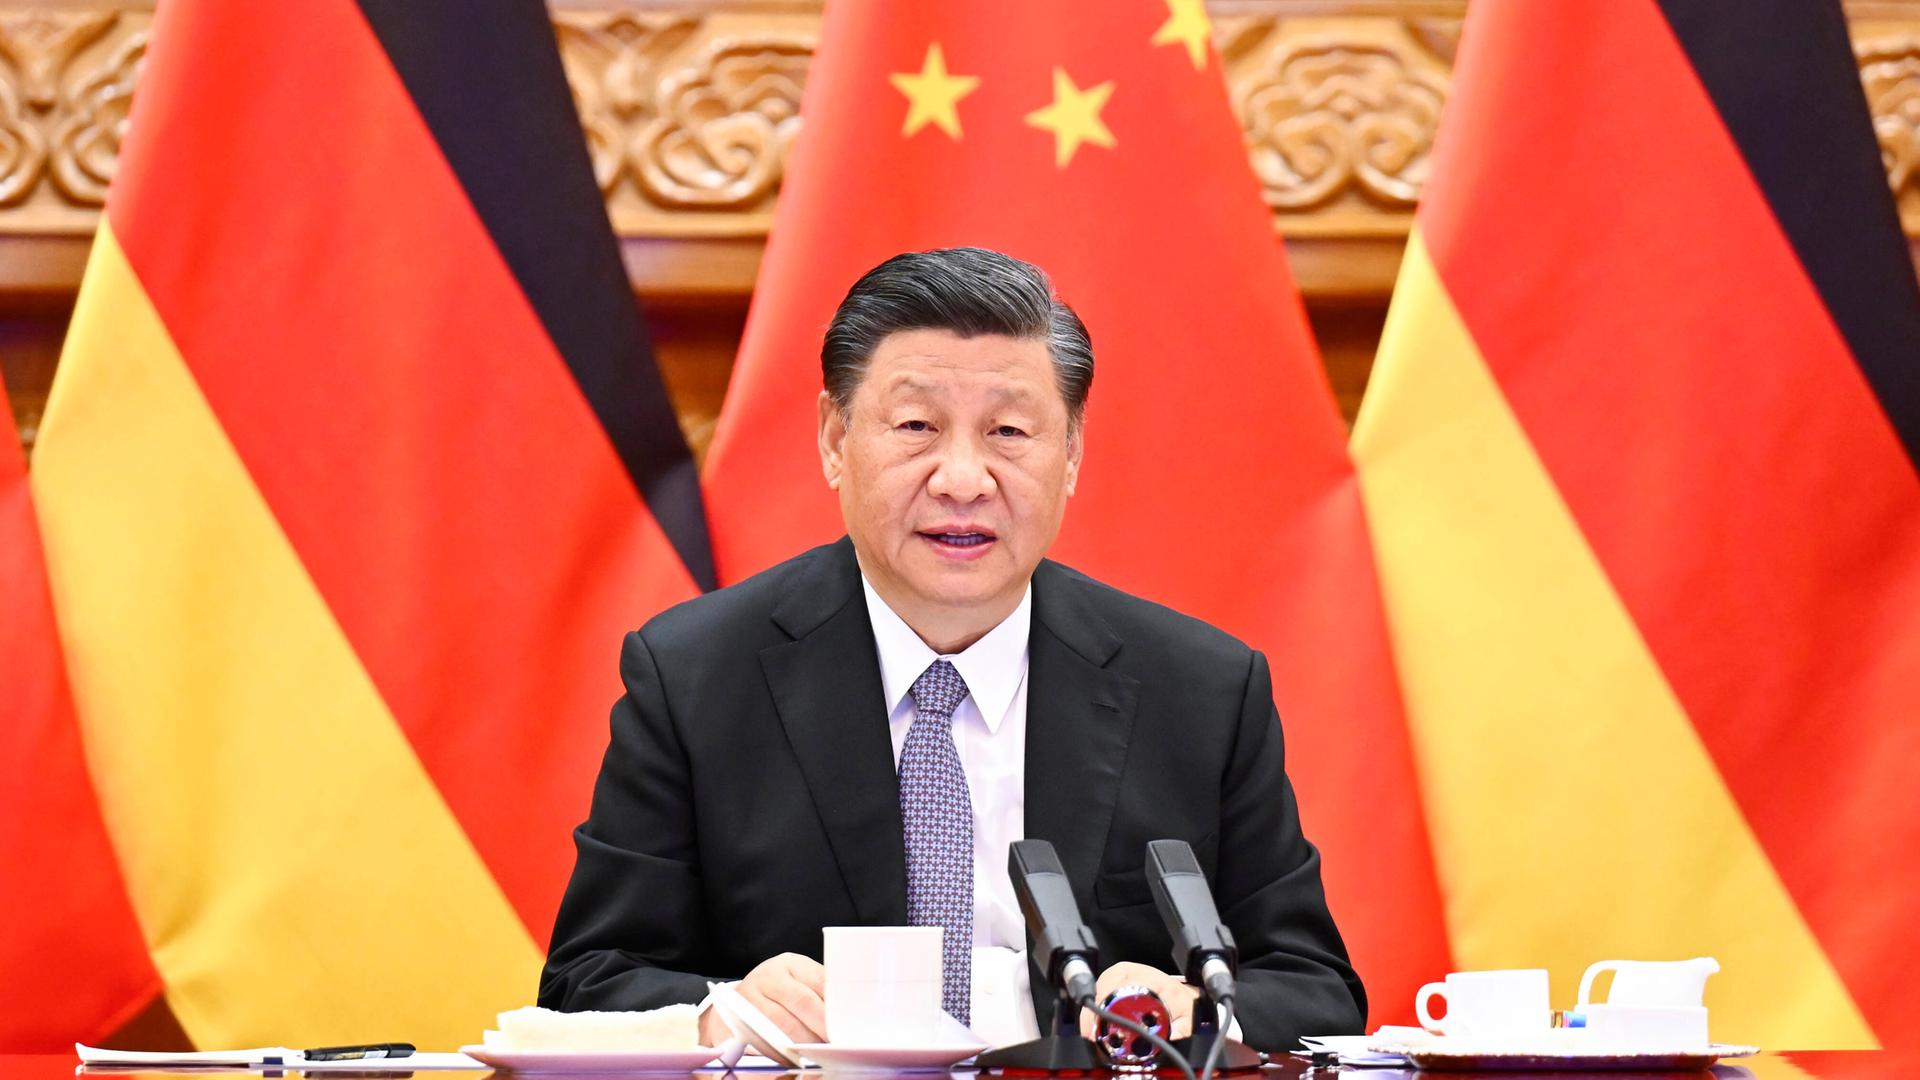 Xi Jinping sitzt vor deutschen und chinesischen Fahnen